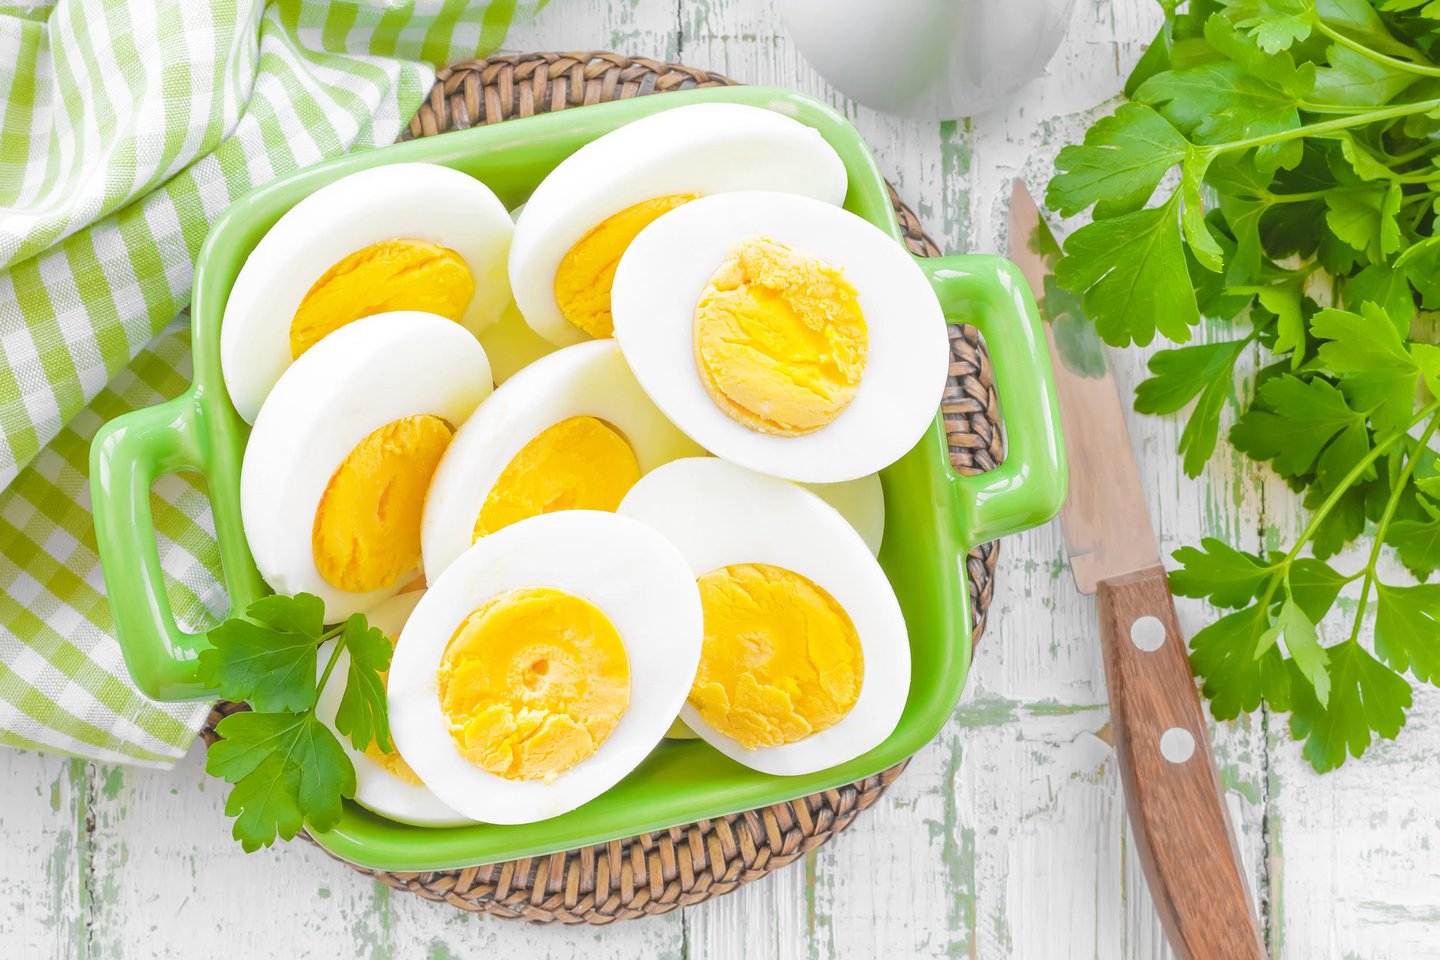  Kiaušinių vartojimas apipintas daugybe mitų.<br> 123rf nuotr.